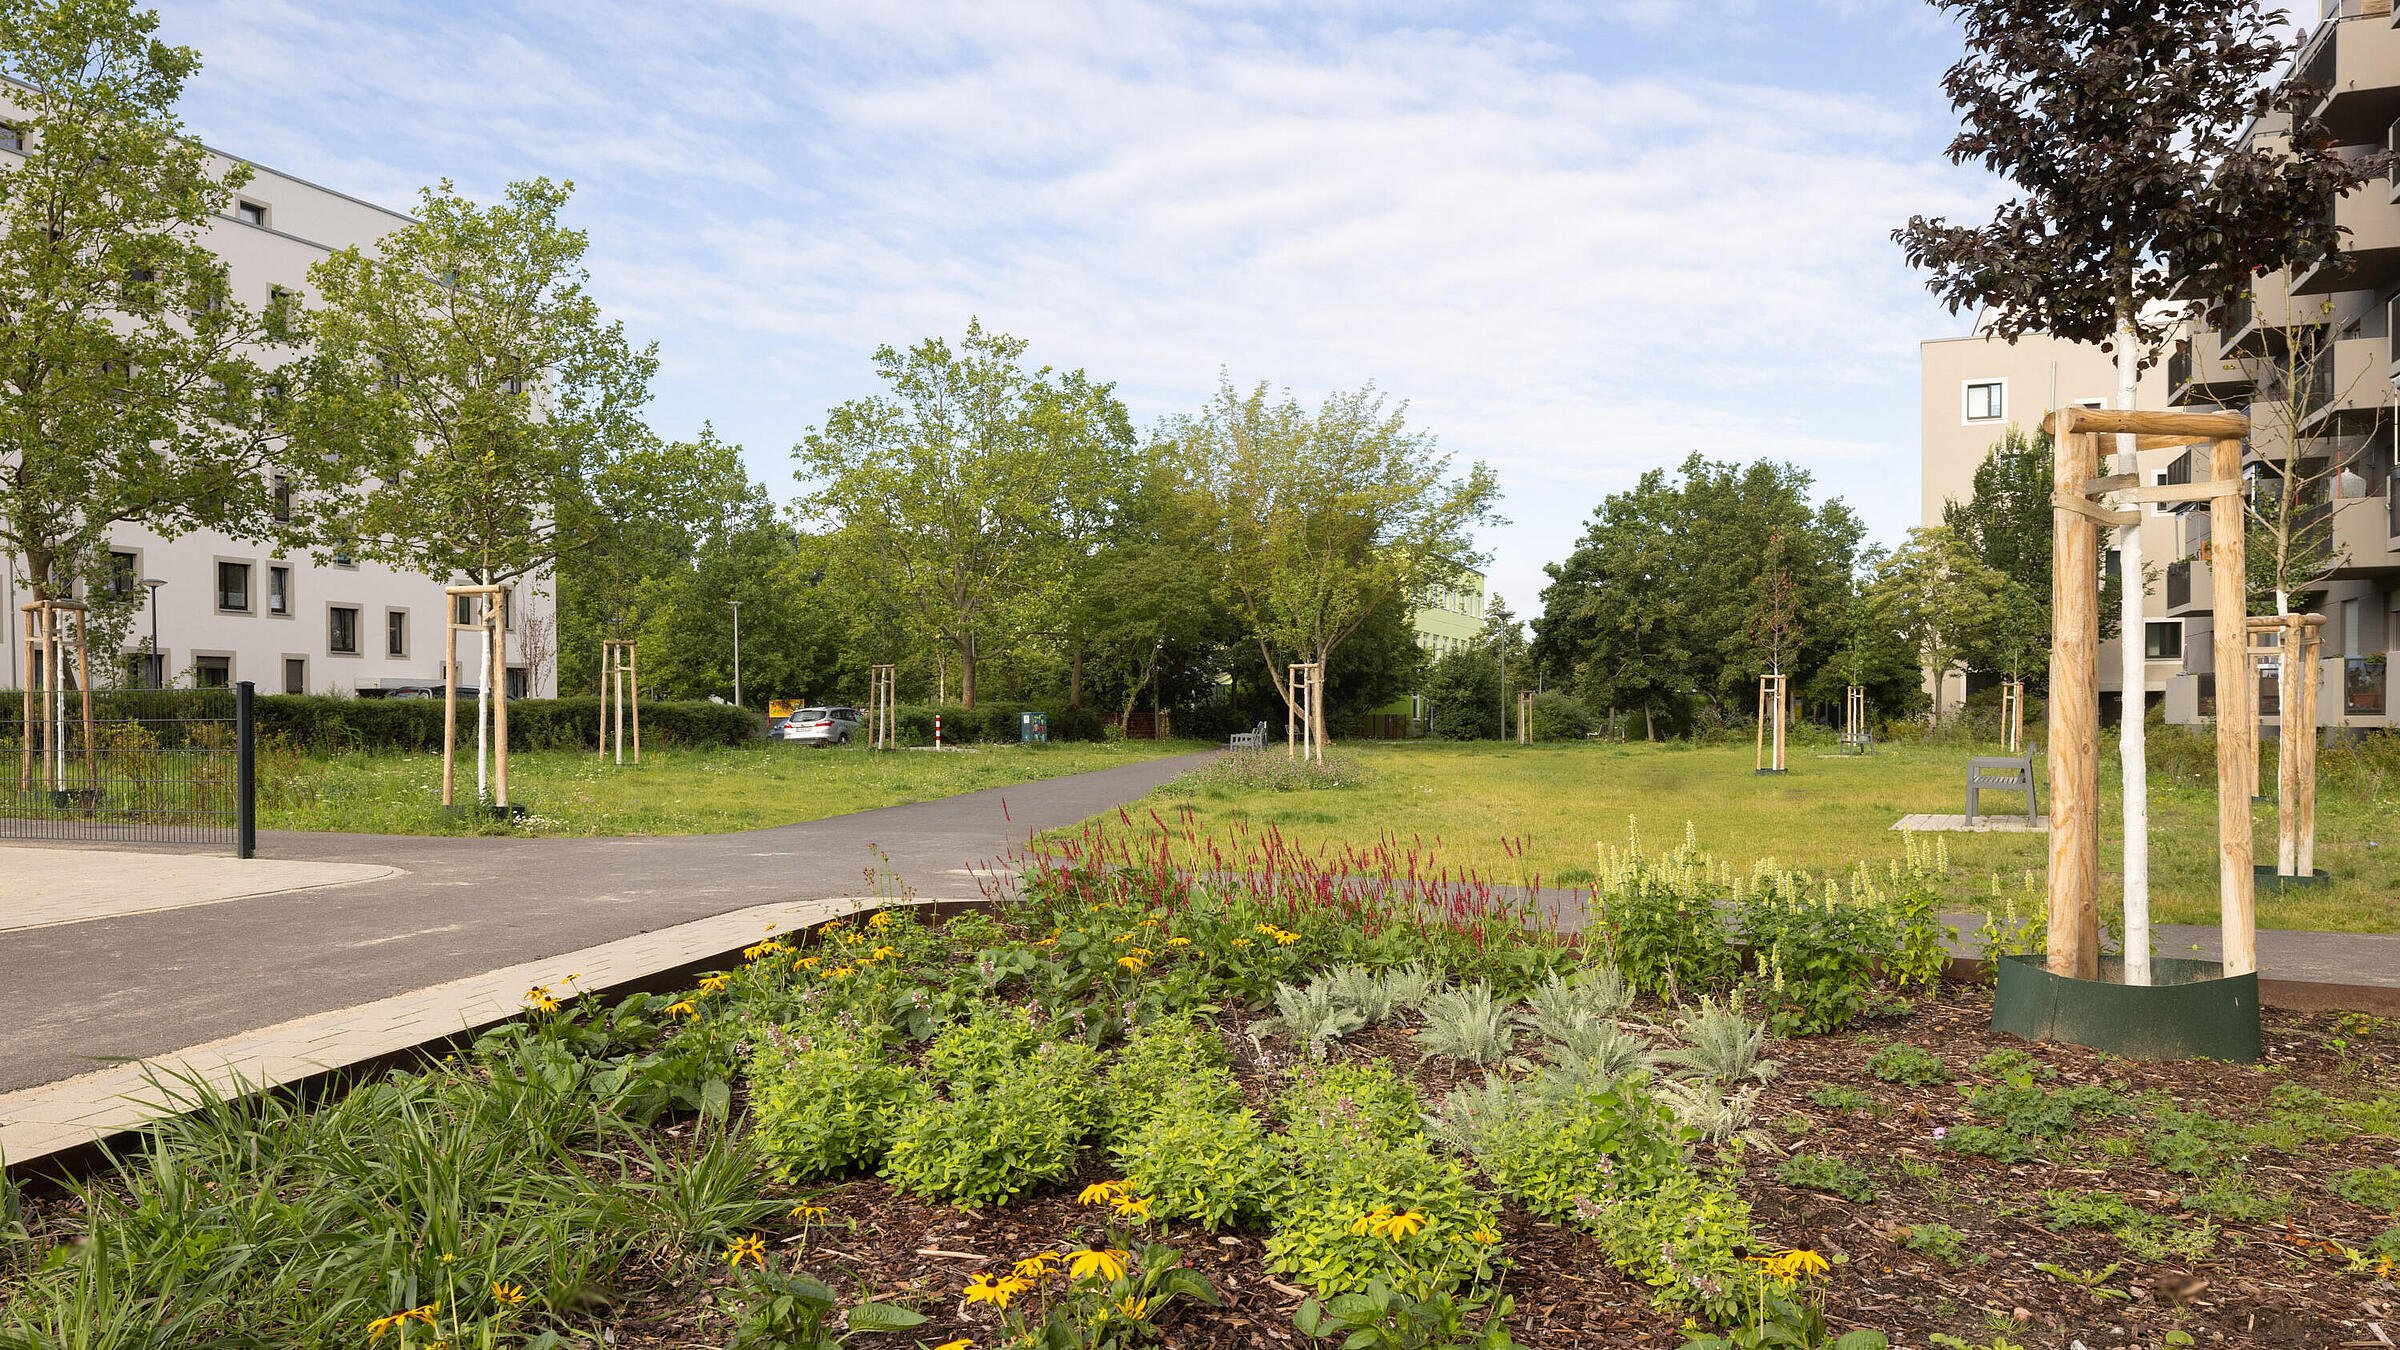 Stadtpark im Quartier Stadtgut Hellersdorf: Pflanzenbeet eingebettet in eine großzügige Grünfläche